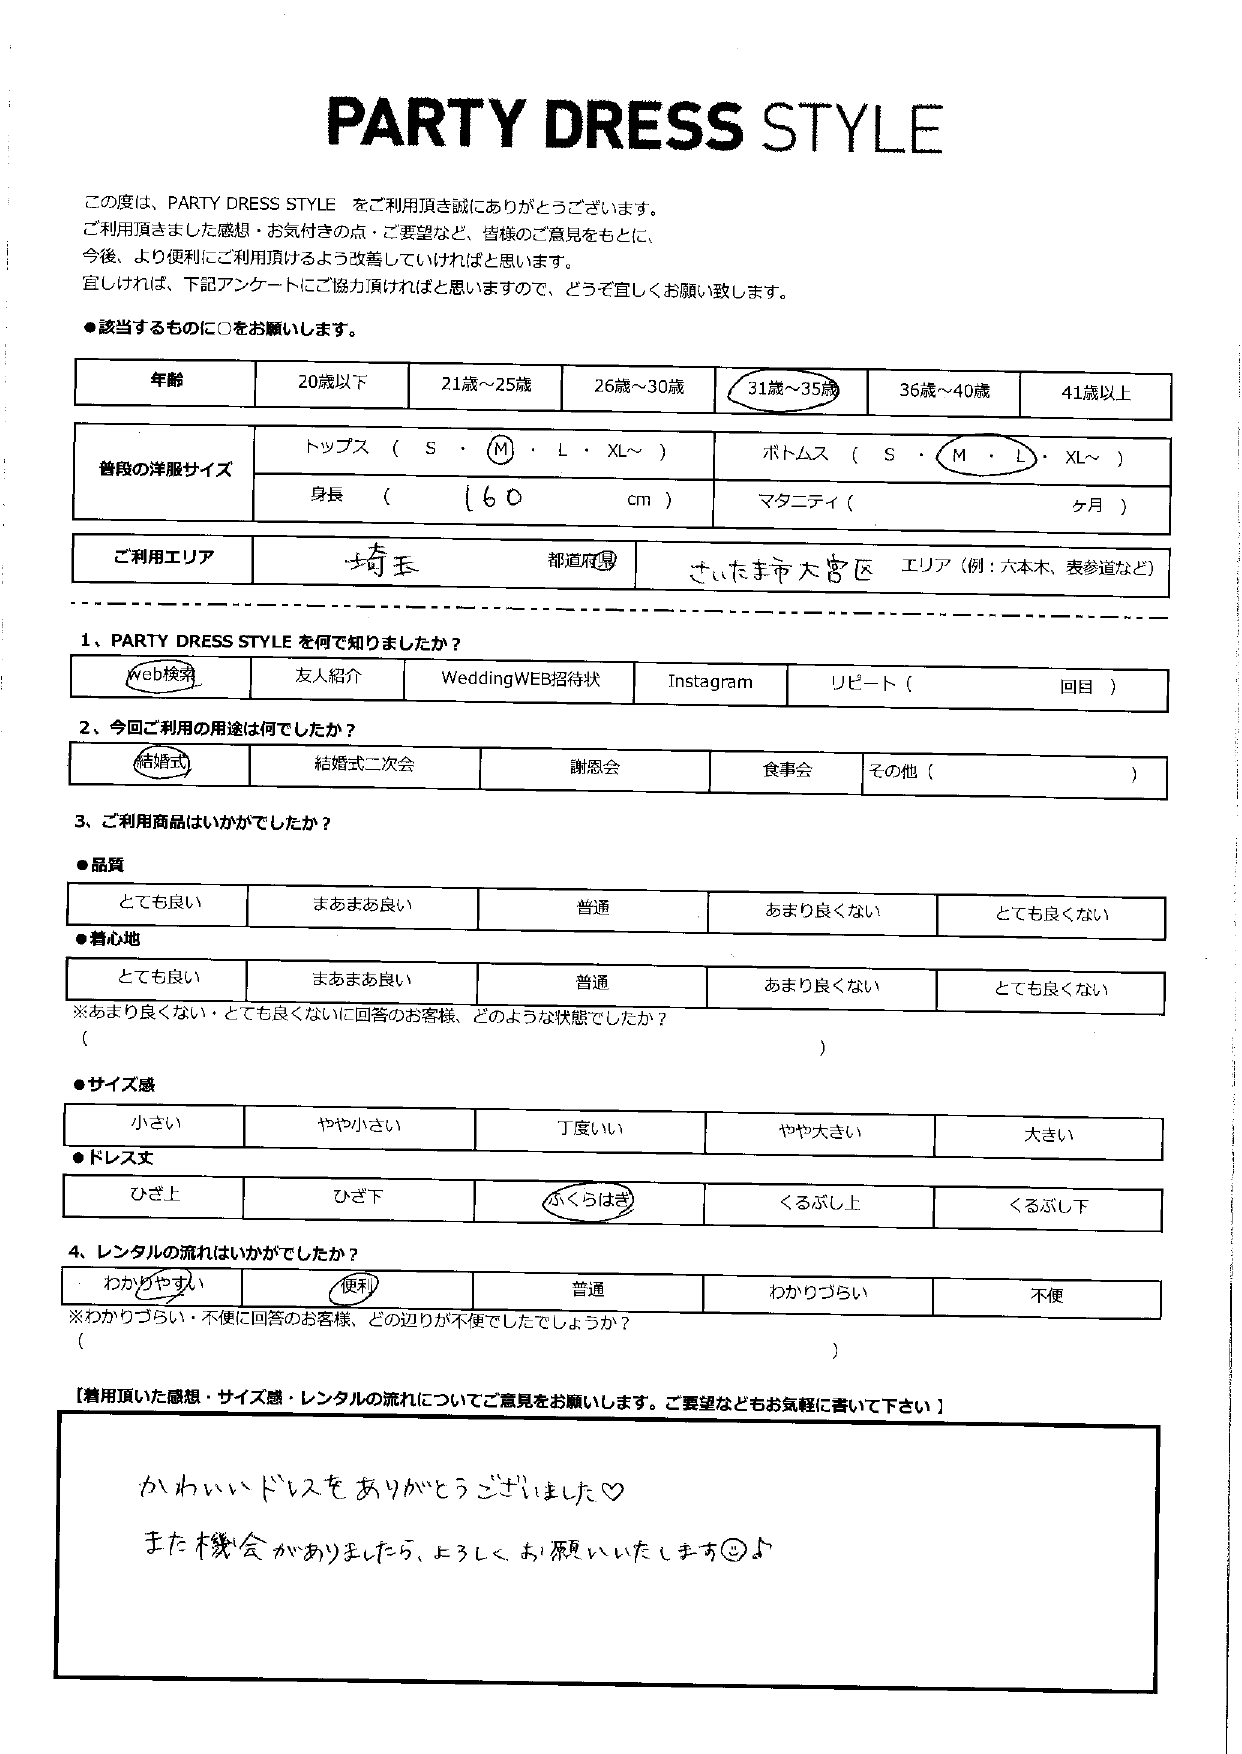 2/4  結婚式利用   埼玉・さいたまエリア